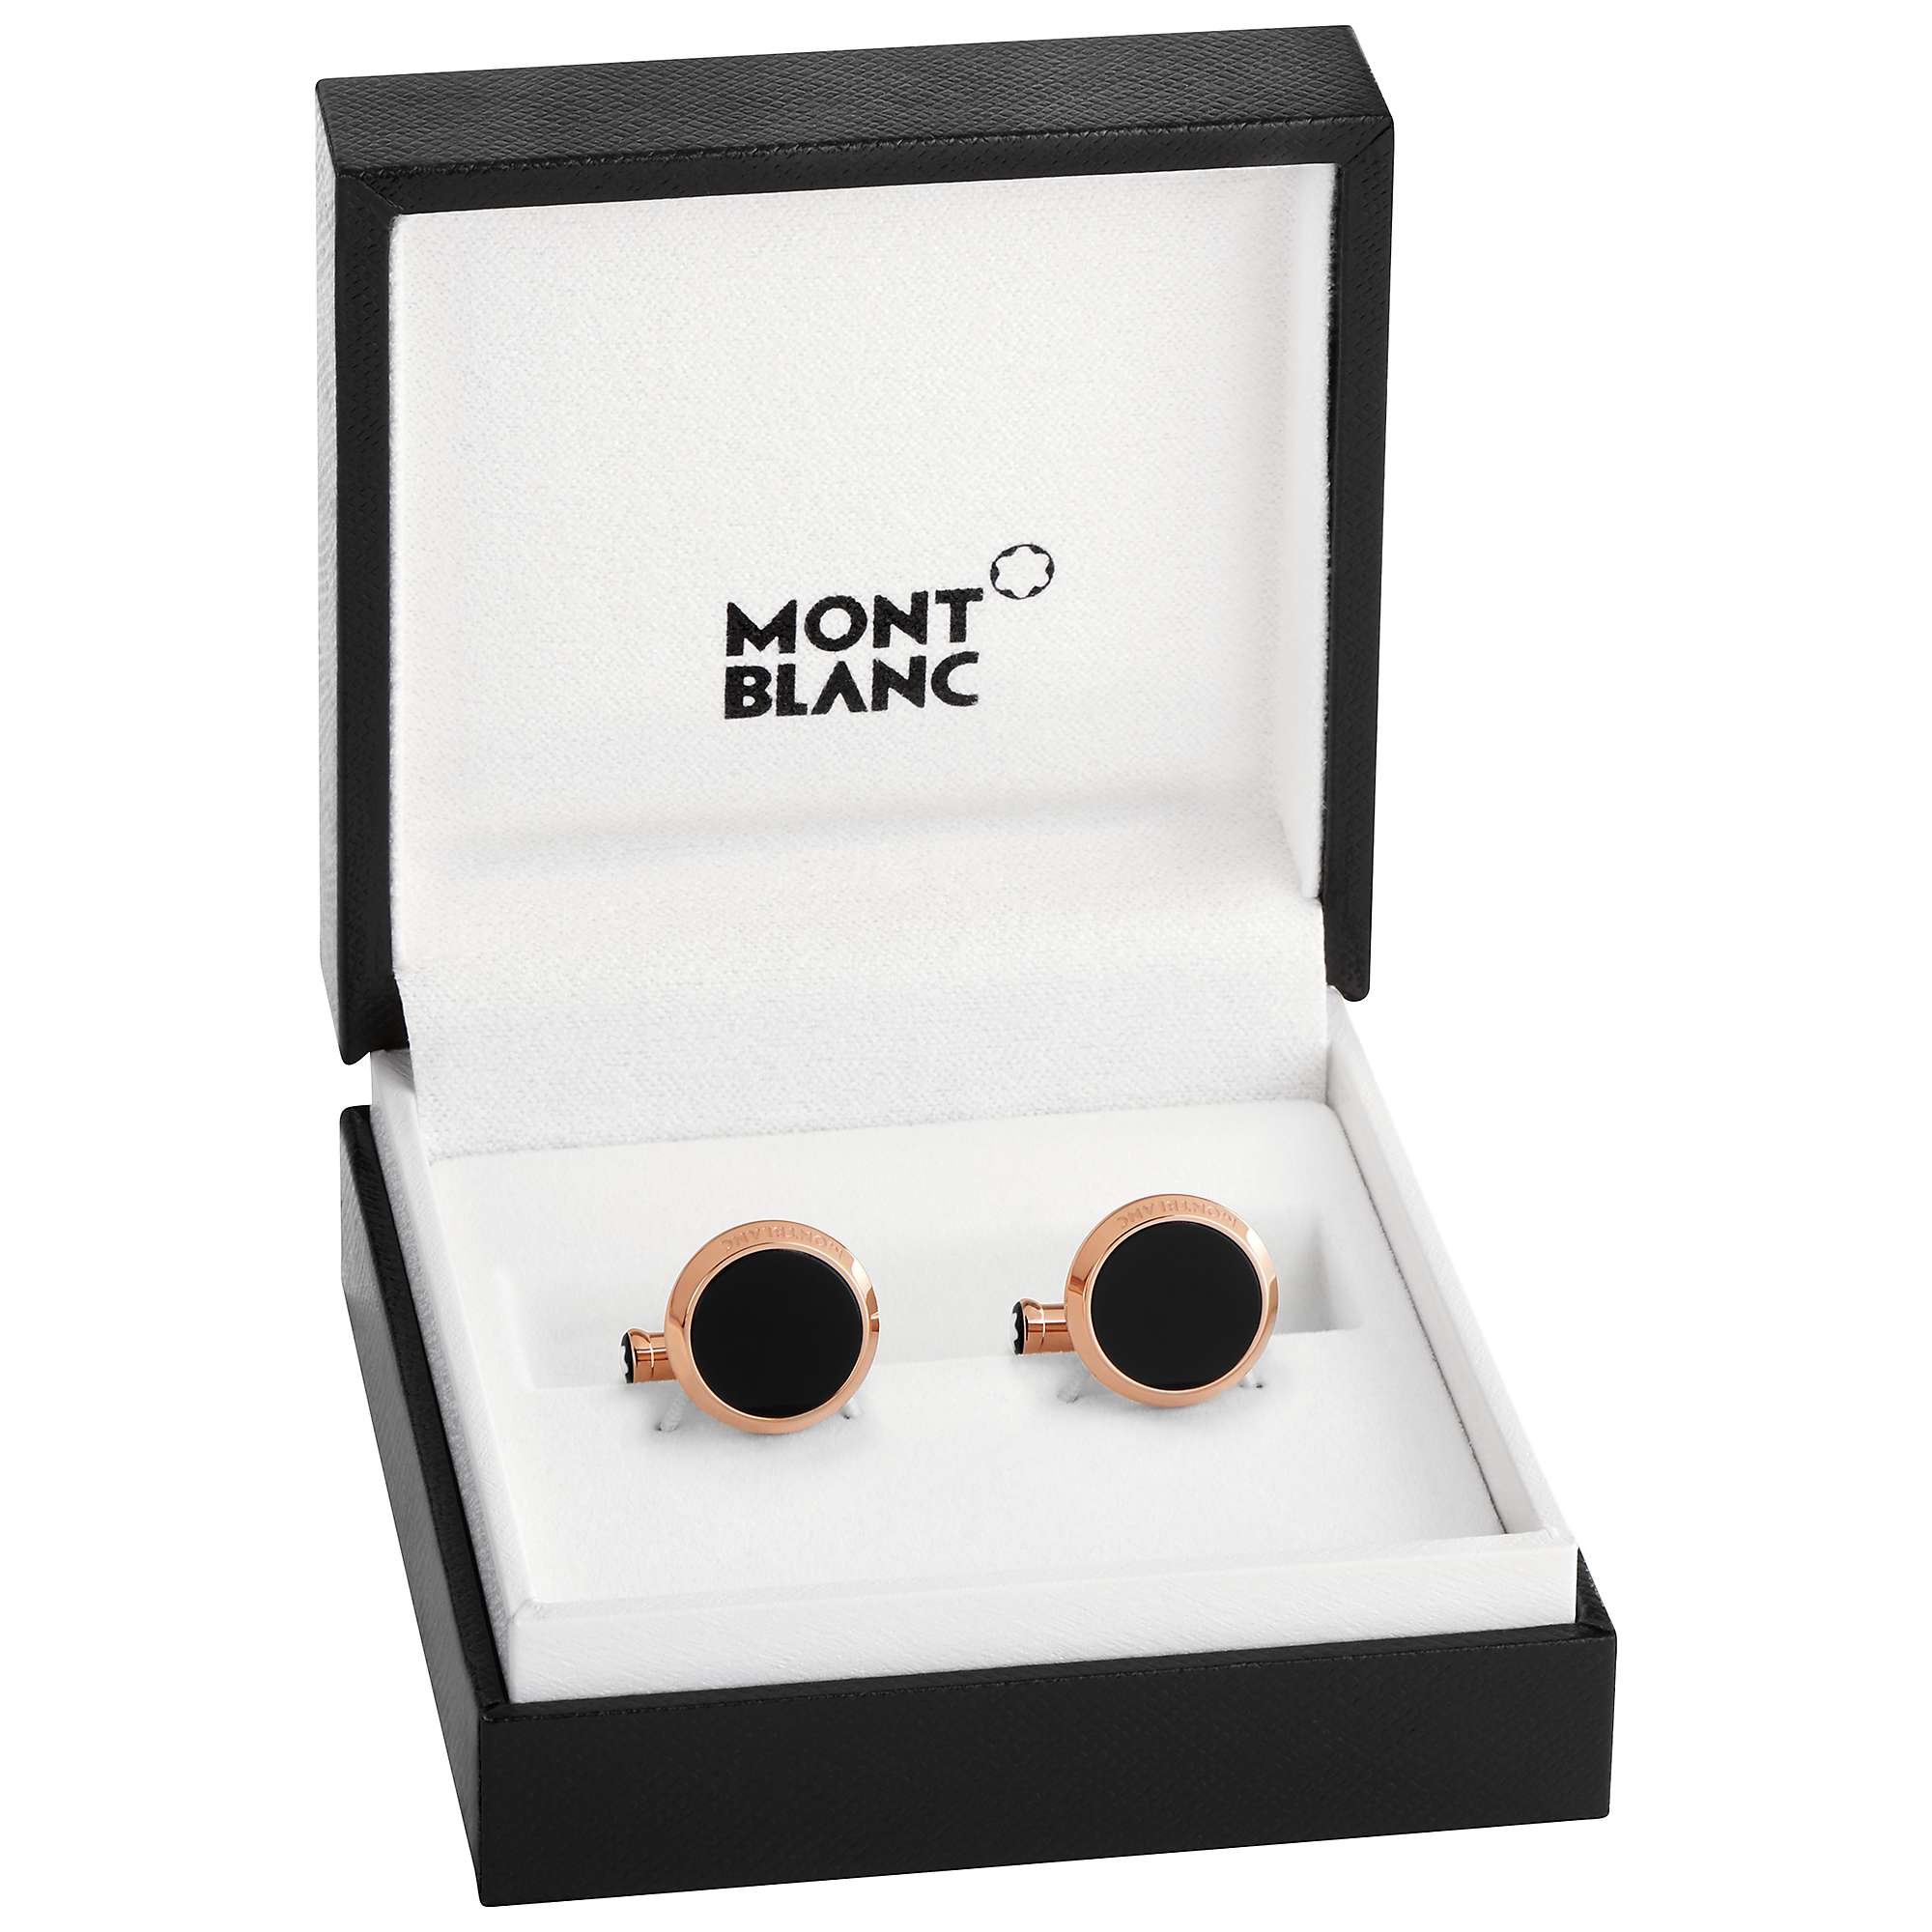 Buy Montblanc Round Onyx Cufflinks, Gold/Black Online at johnlewis.com